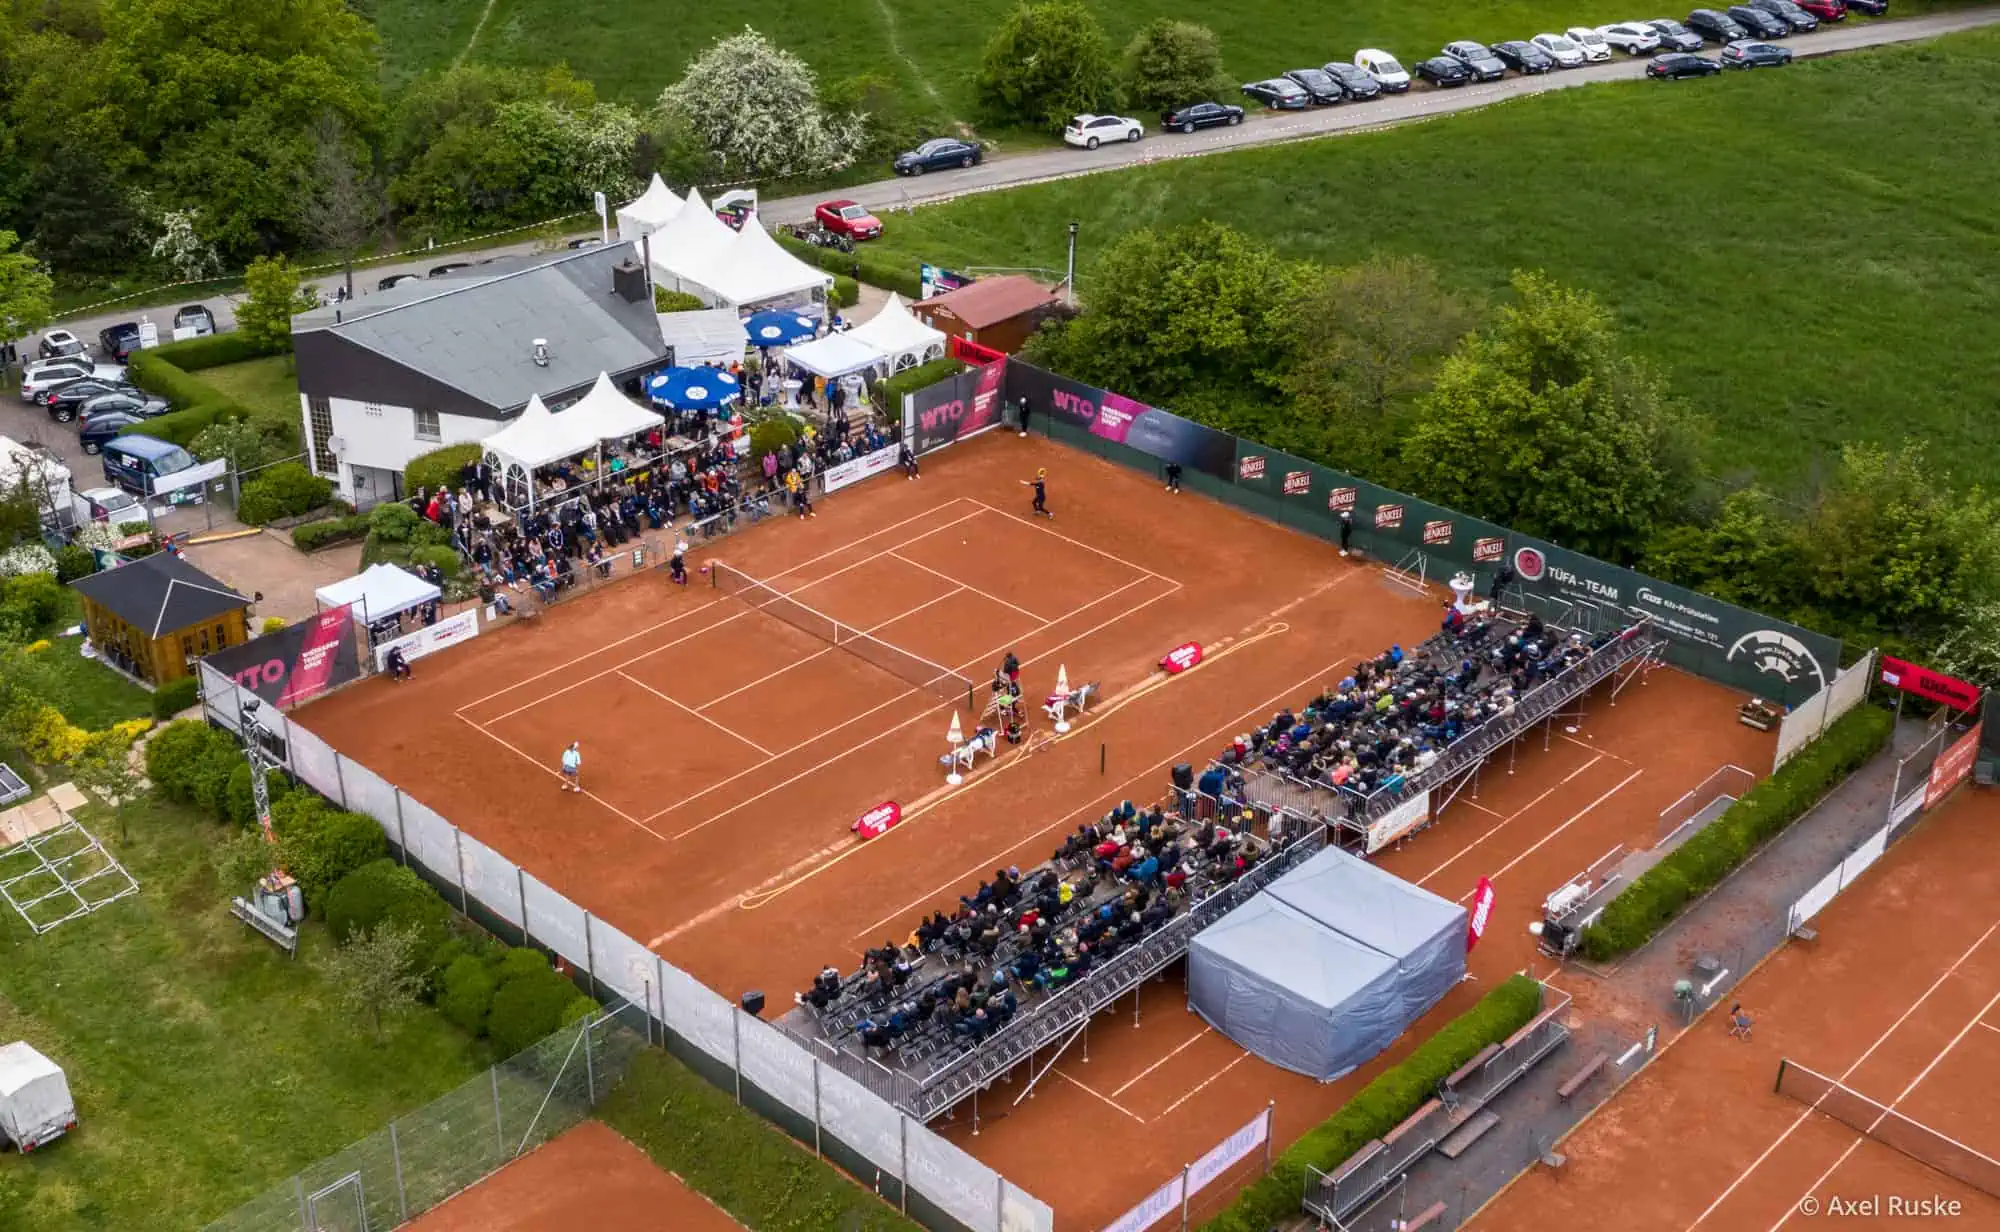 Club-Anlage des Tennis Club Bierstadt während der Wiesbaden Tennis Open WTO 2019